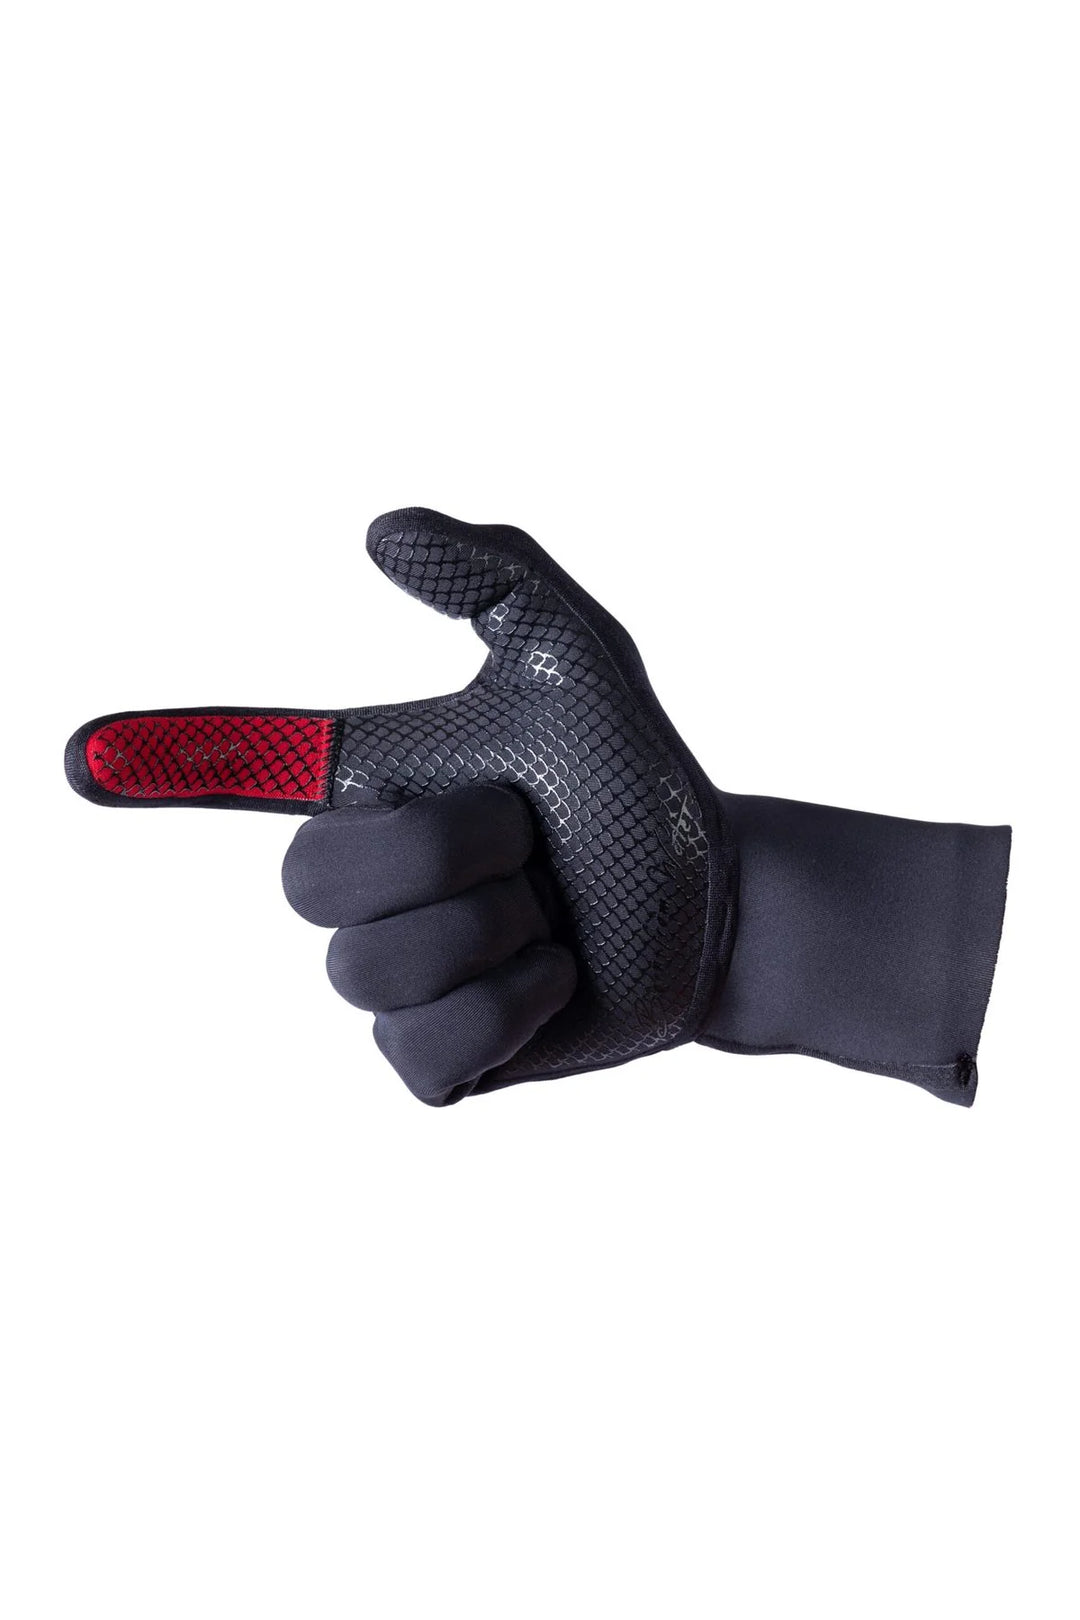 Essentials Line Gloves